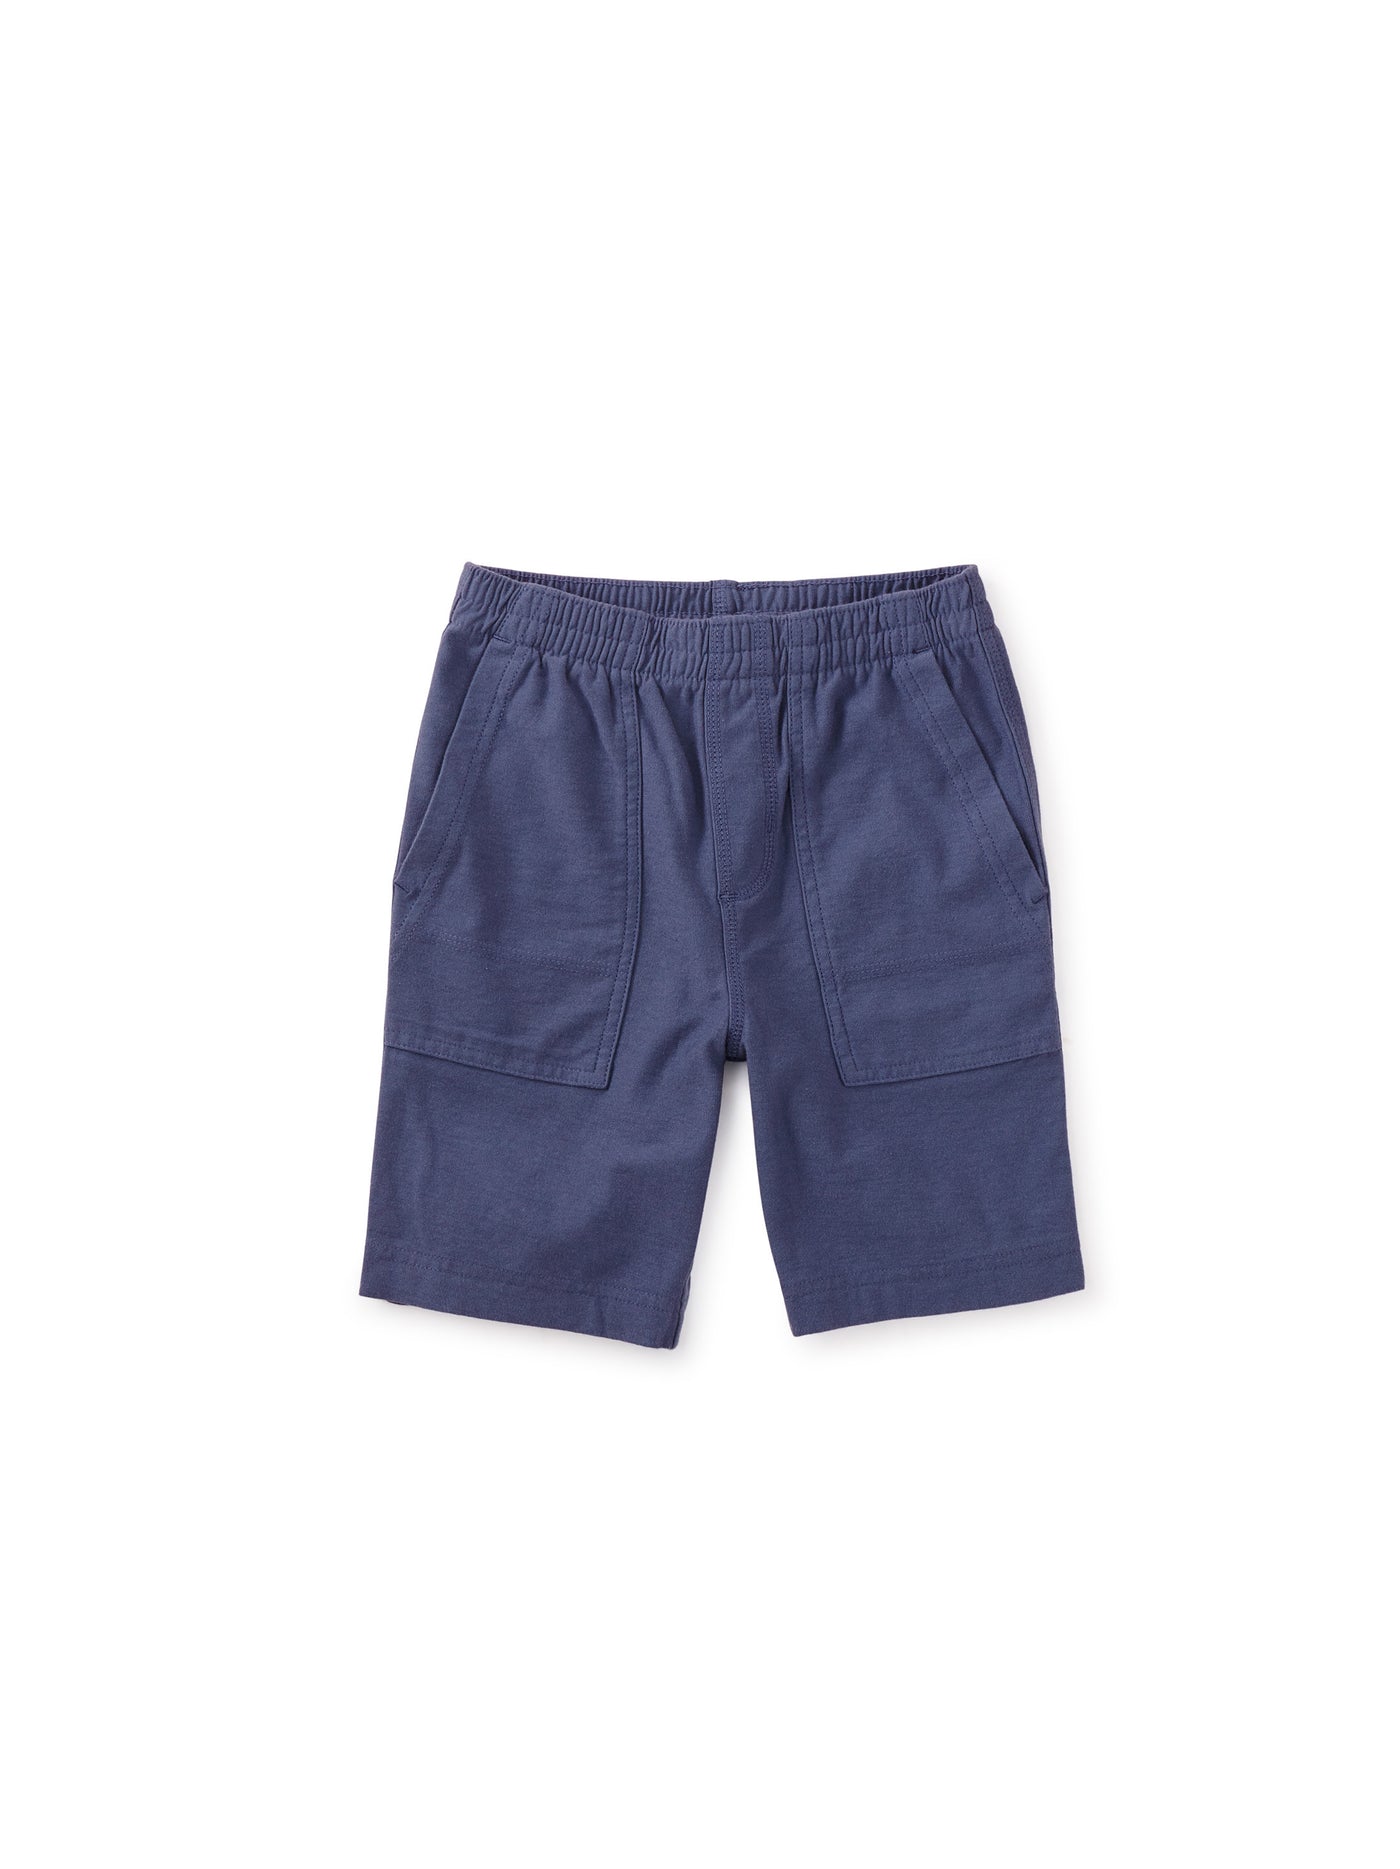 Playwear Shorts/Triumph